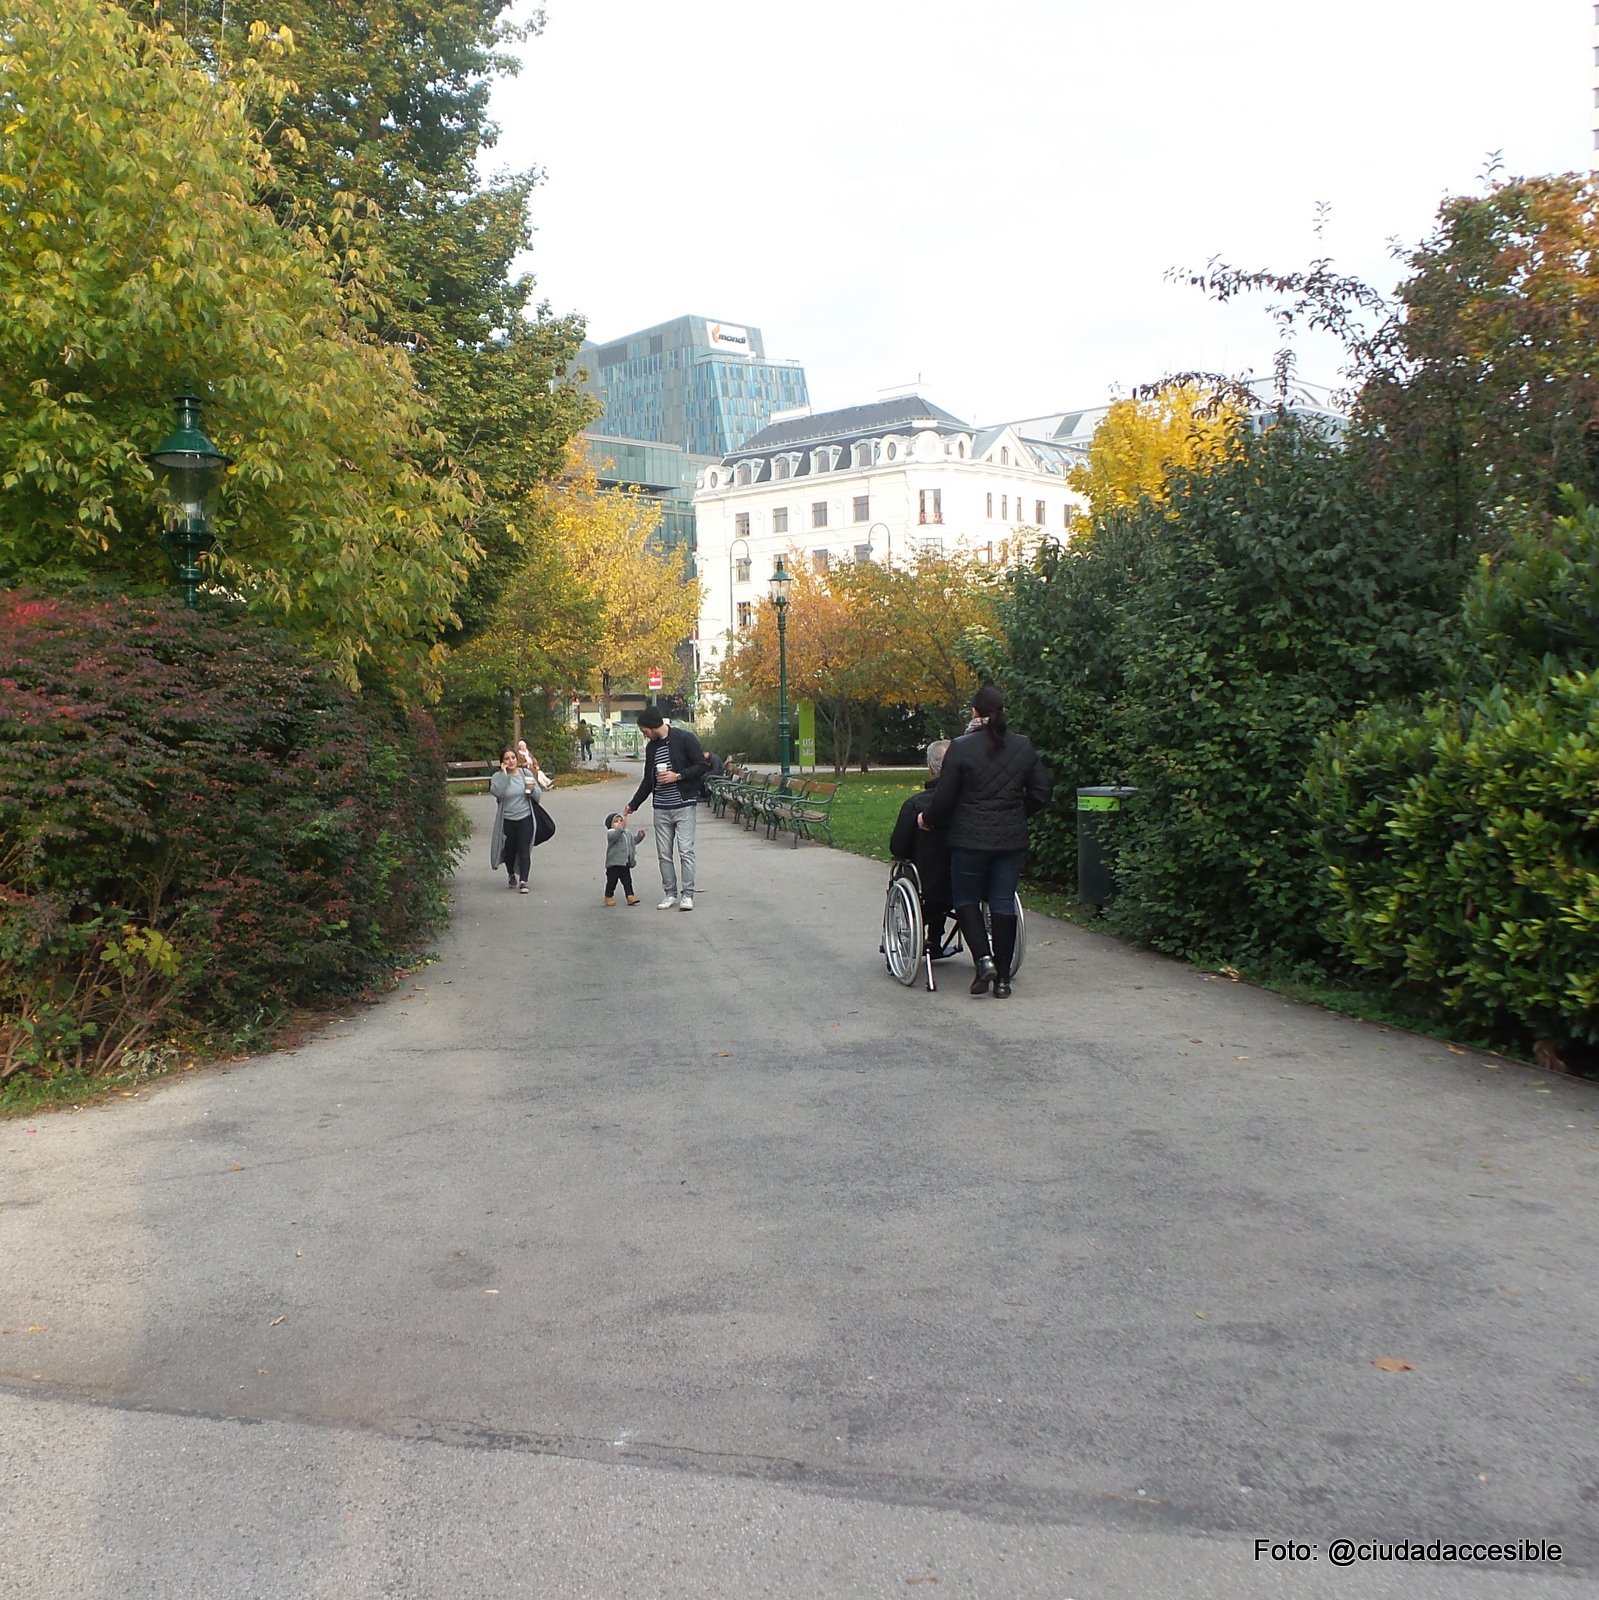 privilegiar la movilidad peatonal con espacios amplios y despejados